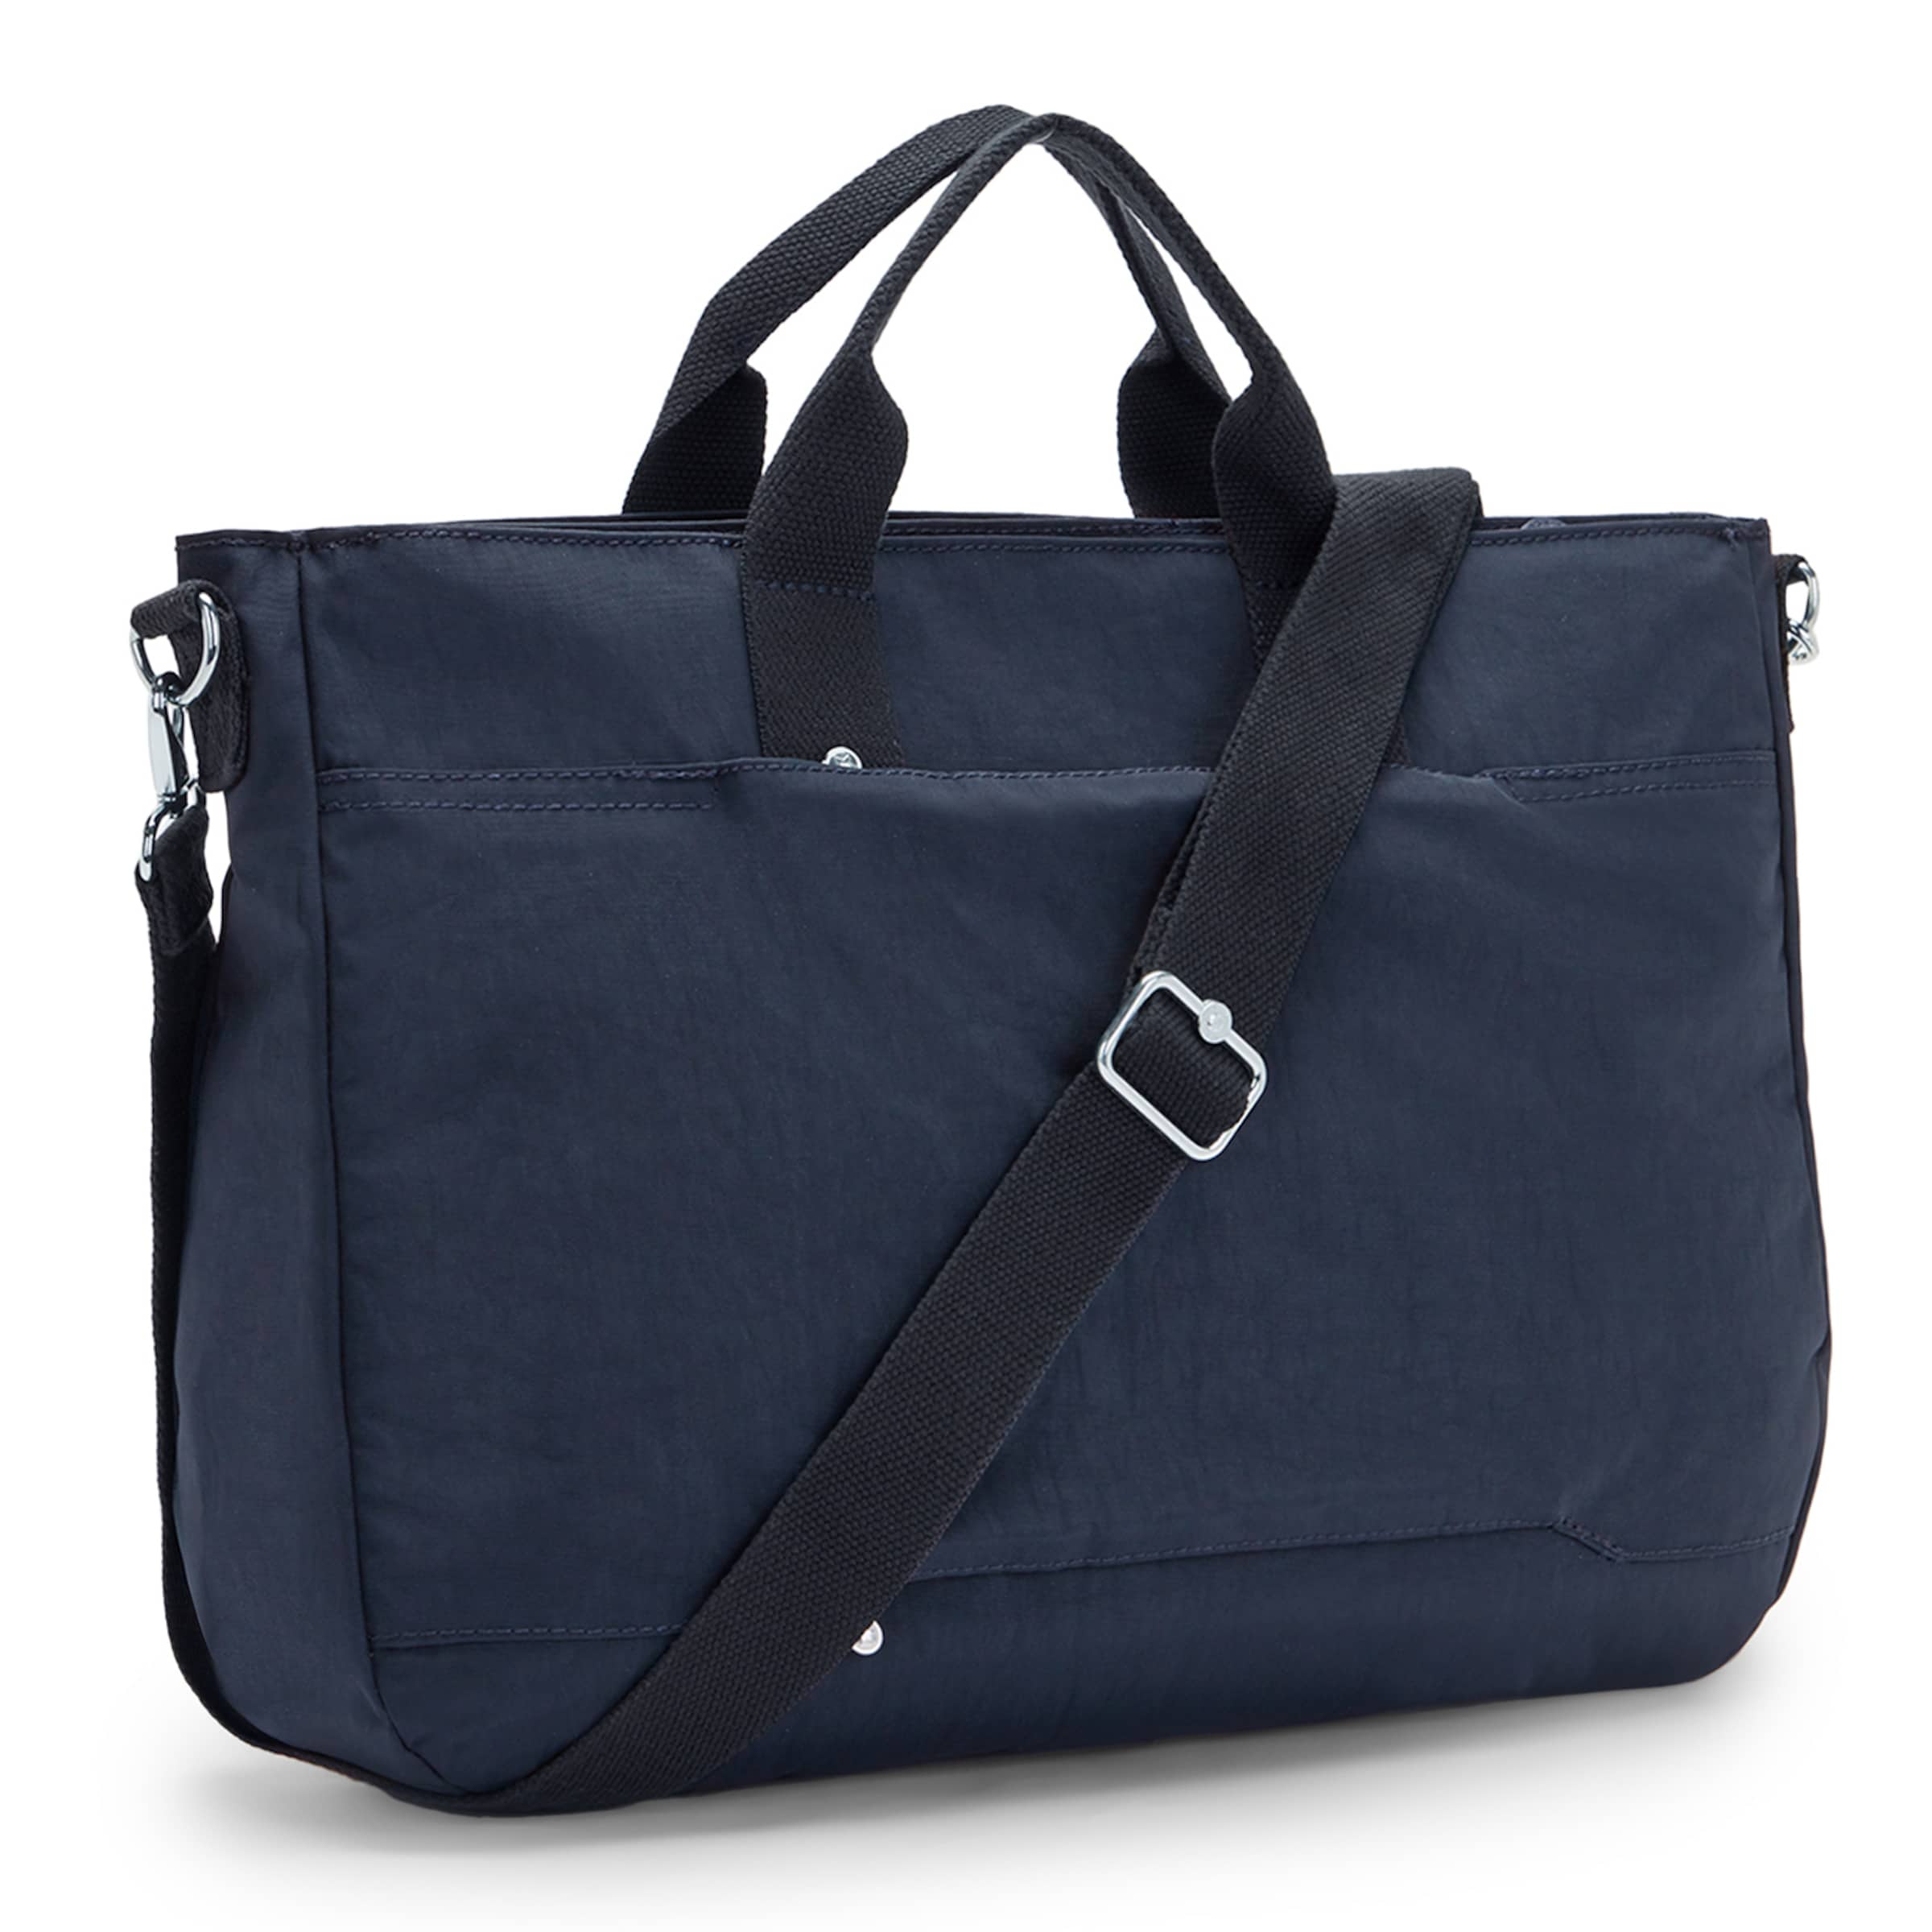 Frauen Taschen & Rucksäcke KIPLING Handtasche 'Miho' in Dunkelblau - BG55818